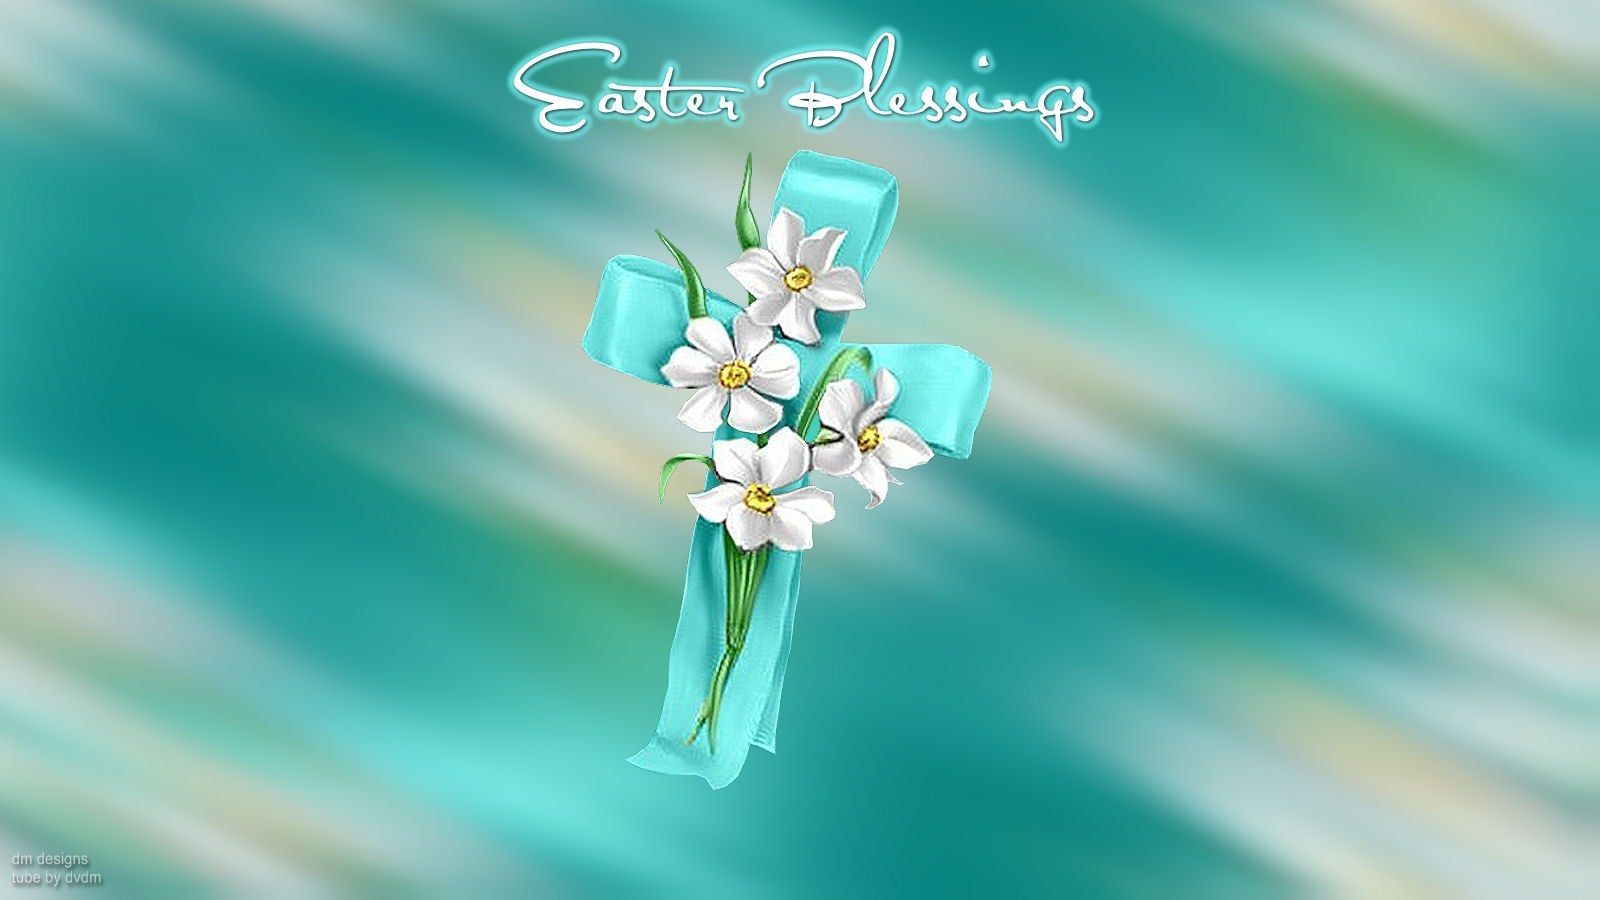 Ribbon Cross Easter Blessings. Facebook cover